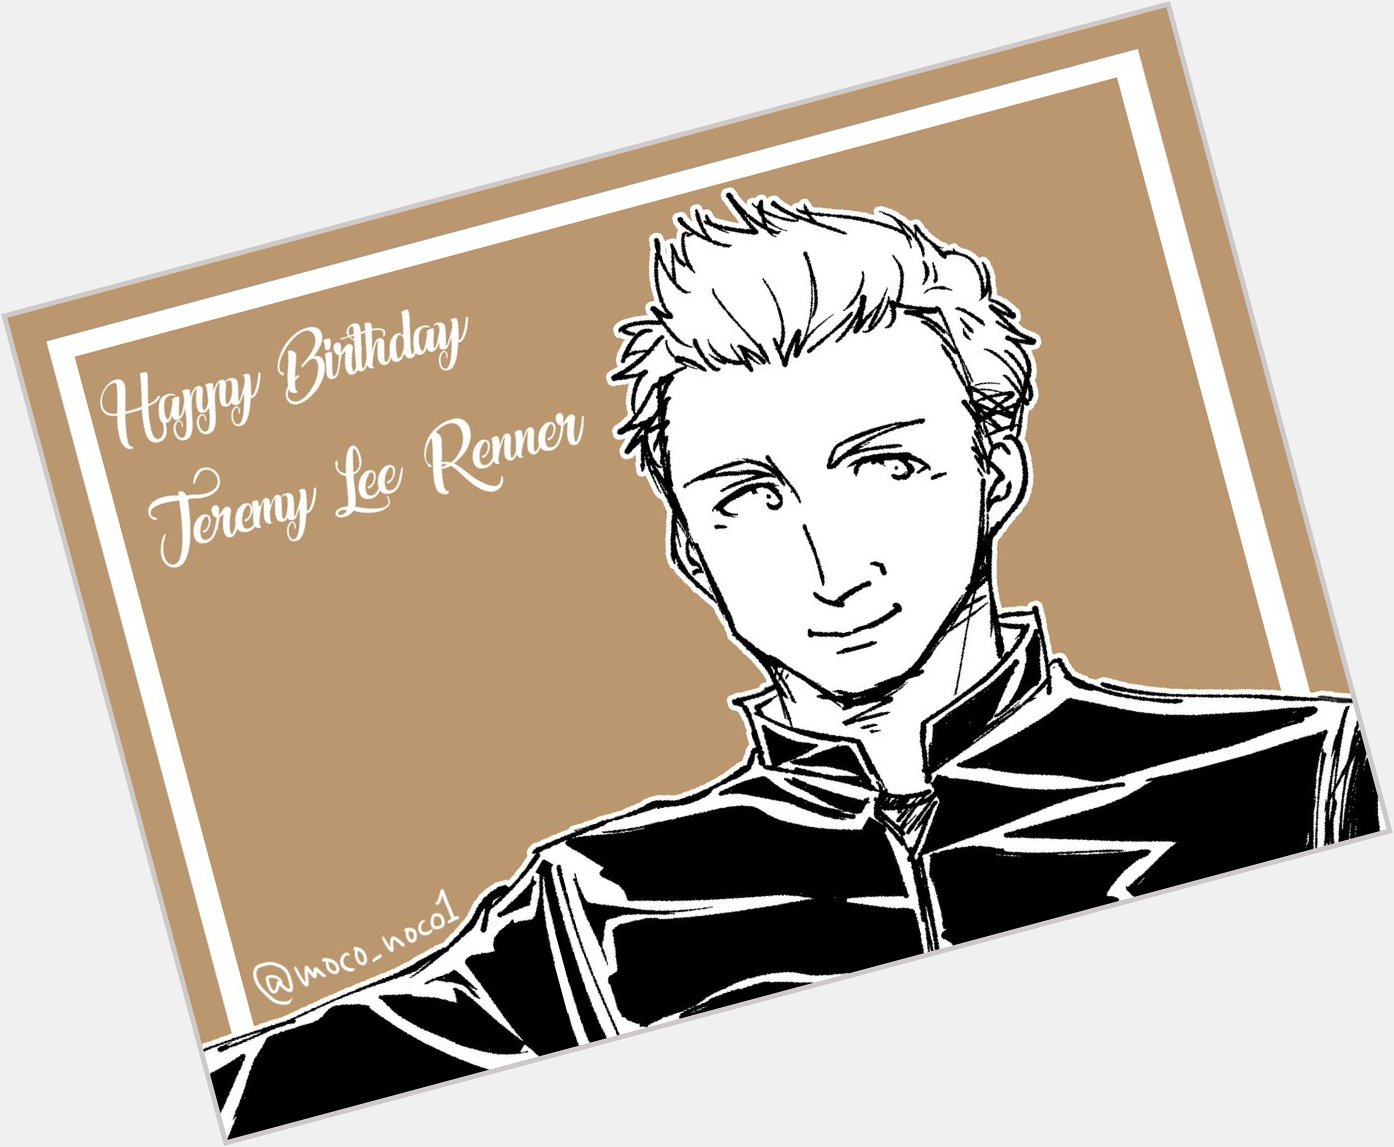                 Happy Birthday Jeremy Renner !!!  